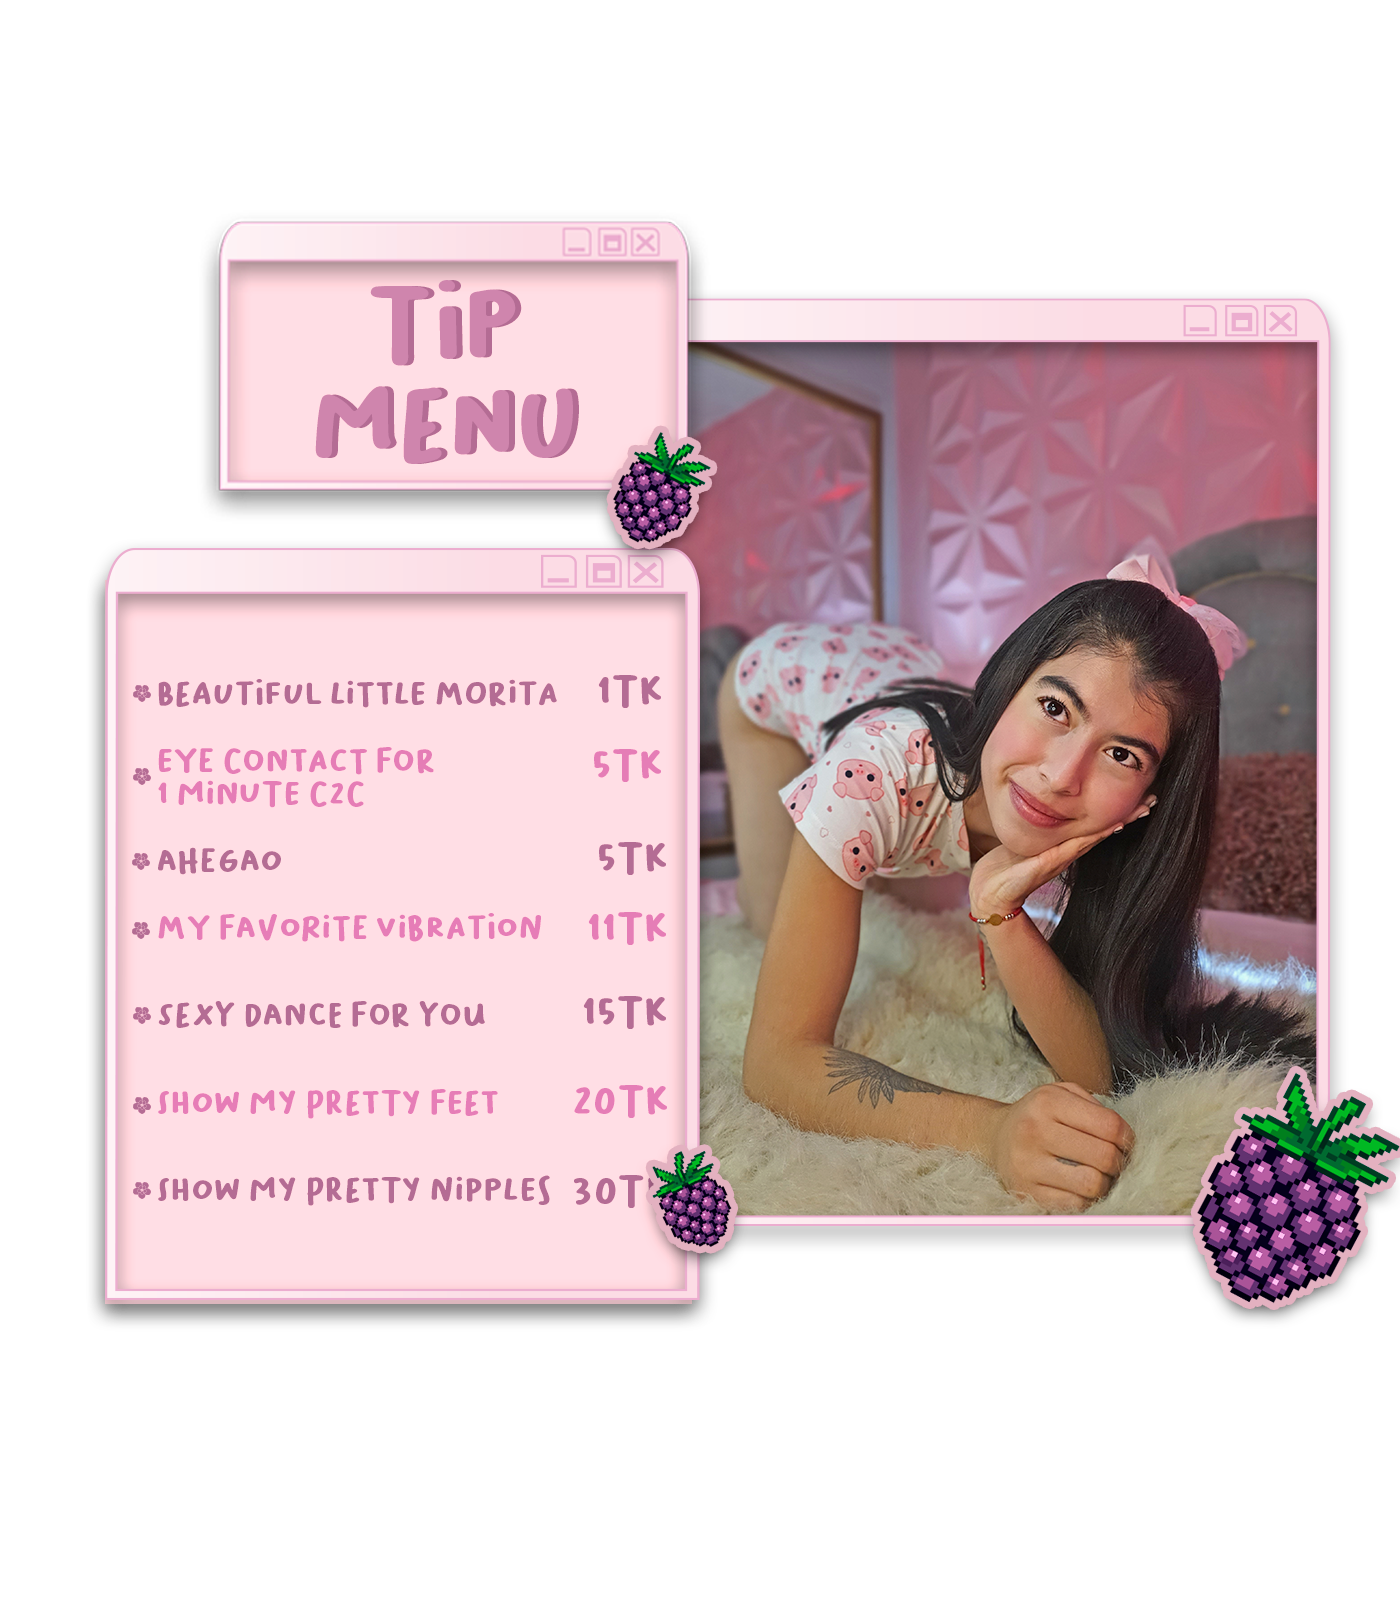 Morita-J Tip menu image: 1